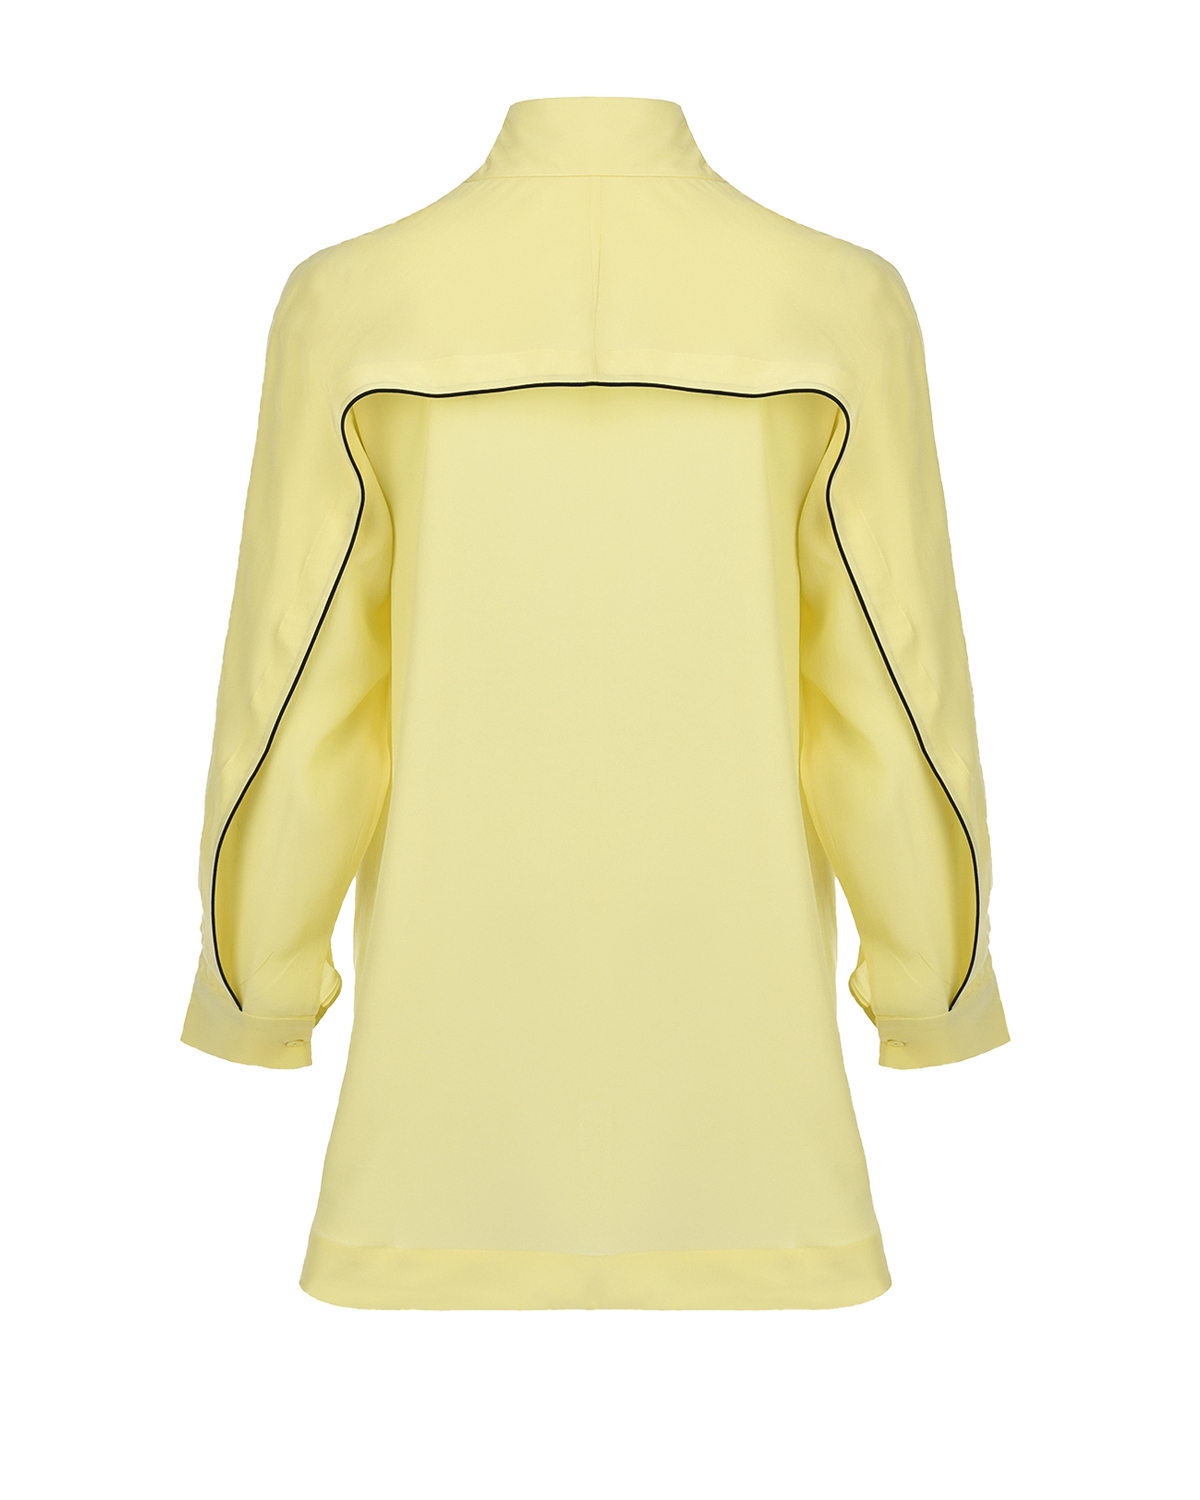 Шелковая блуза лимонного цвета LOVE BIRDS, размер 40 - фото 7